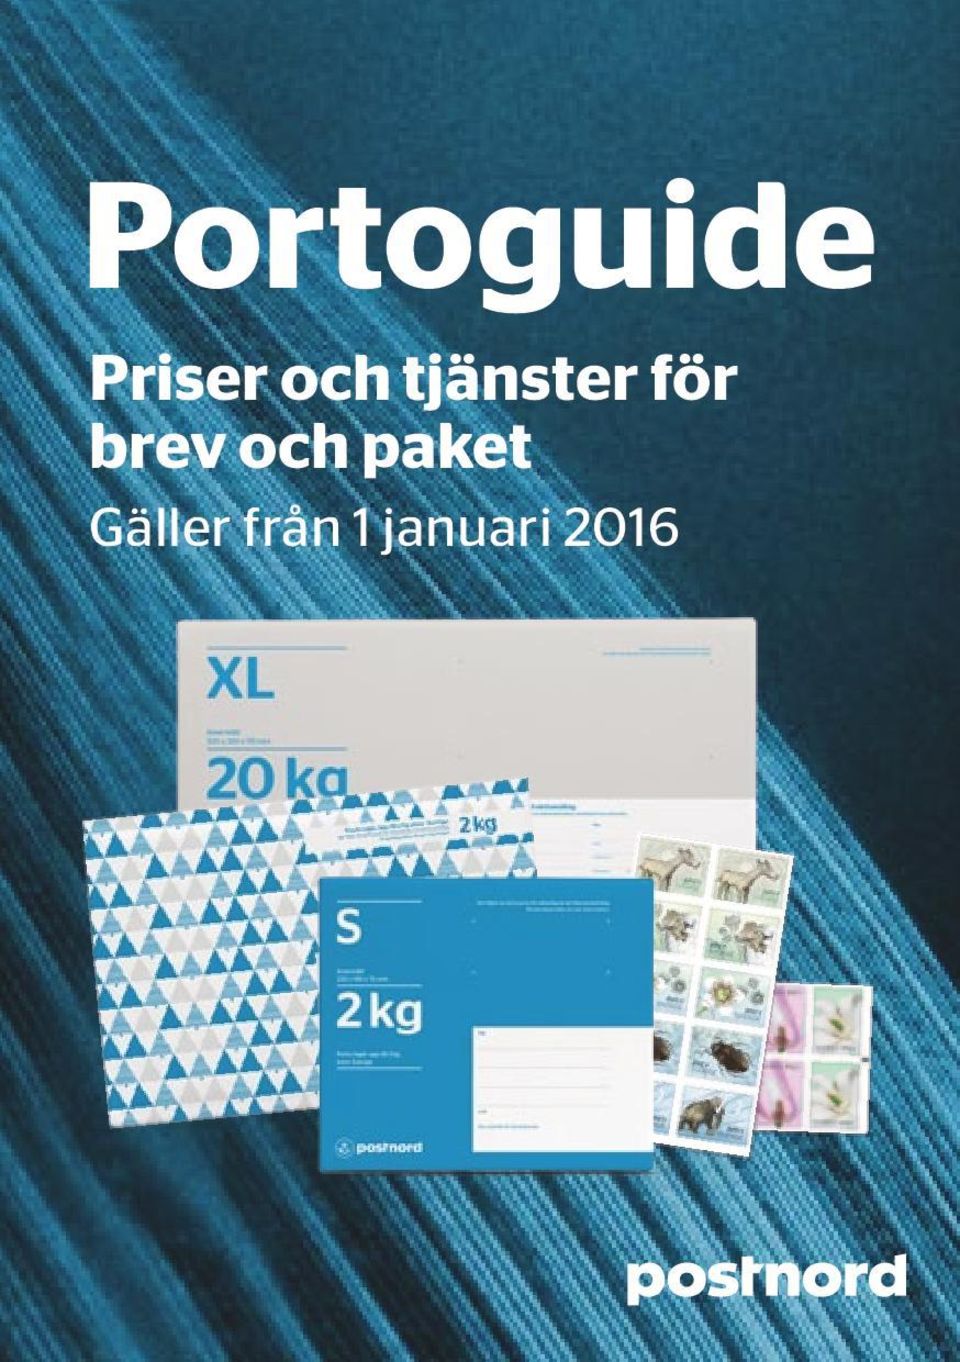 Portoguide Priser och tjänster för brev och paket - PDF Free Download